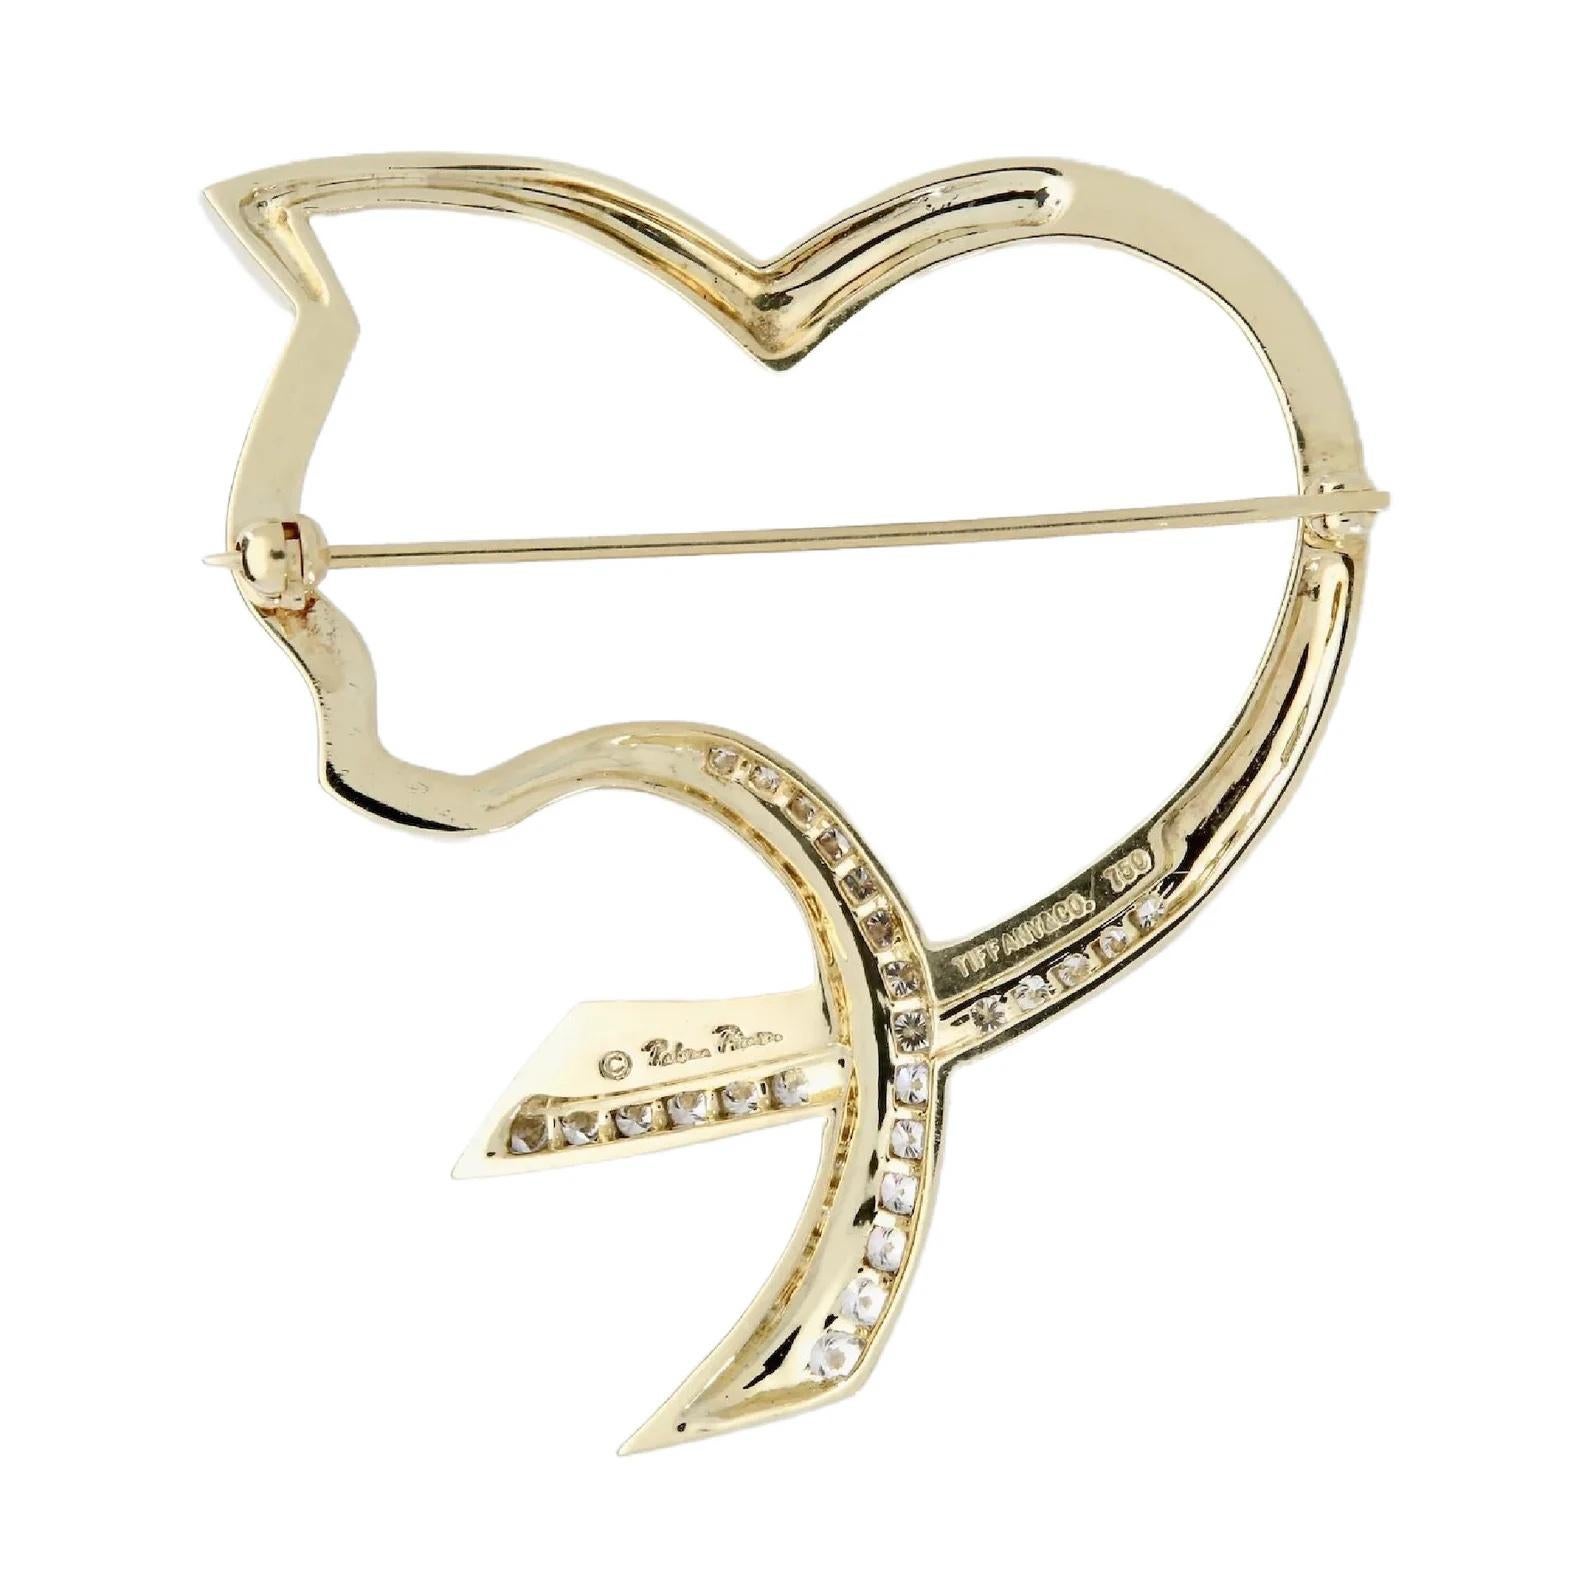 Brilliant Cut Tiffany & Co Elsa Peretti Diamond Cat Heart Brooch in 18K Gold